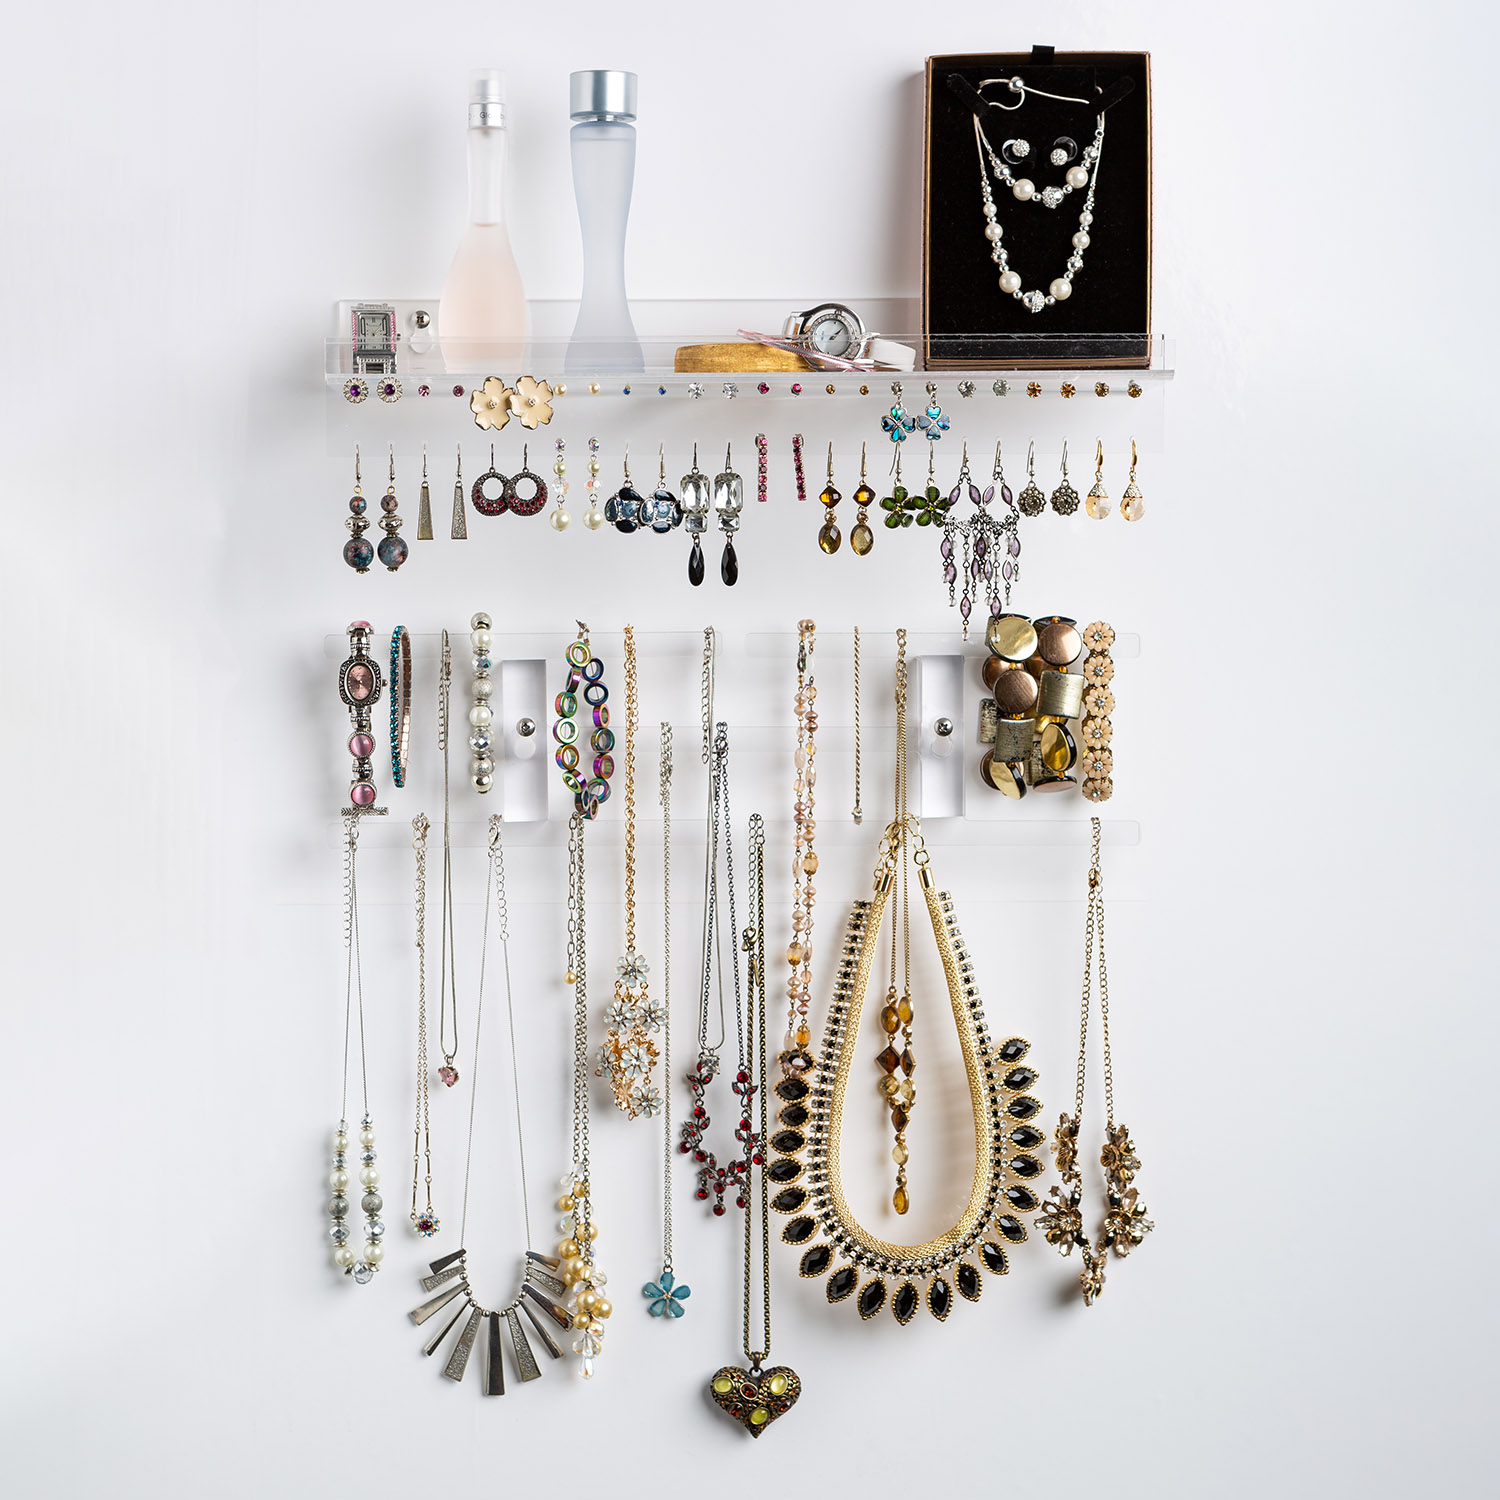 Wall Jewelry Organizer With Shelf